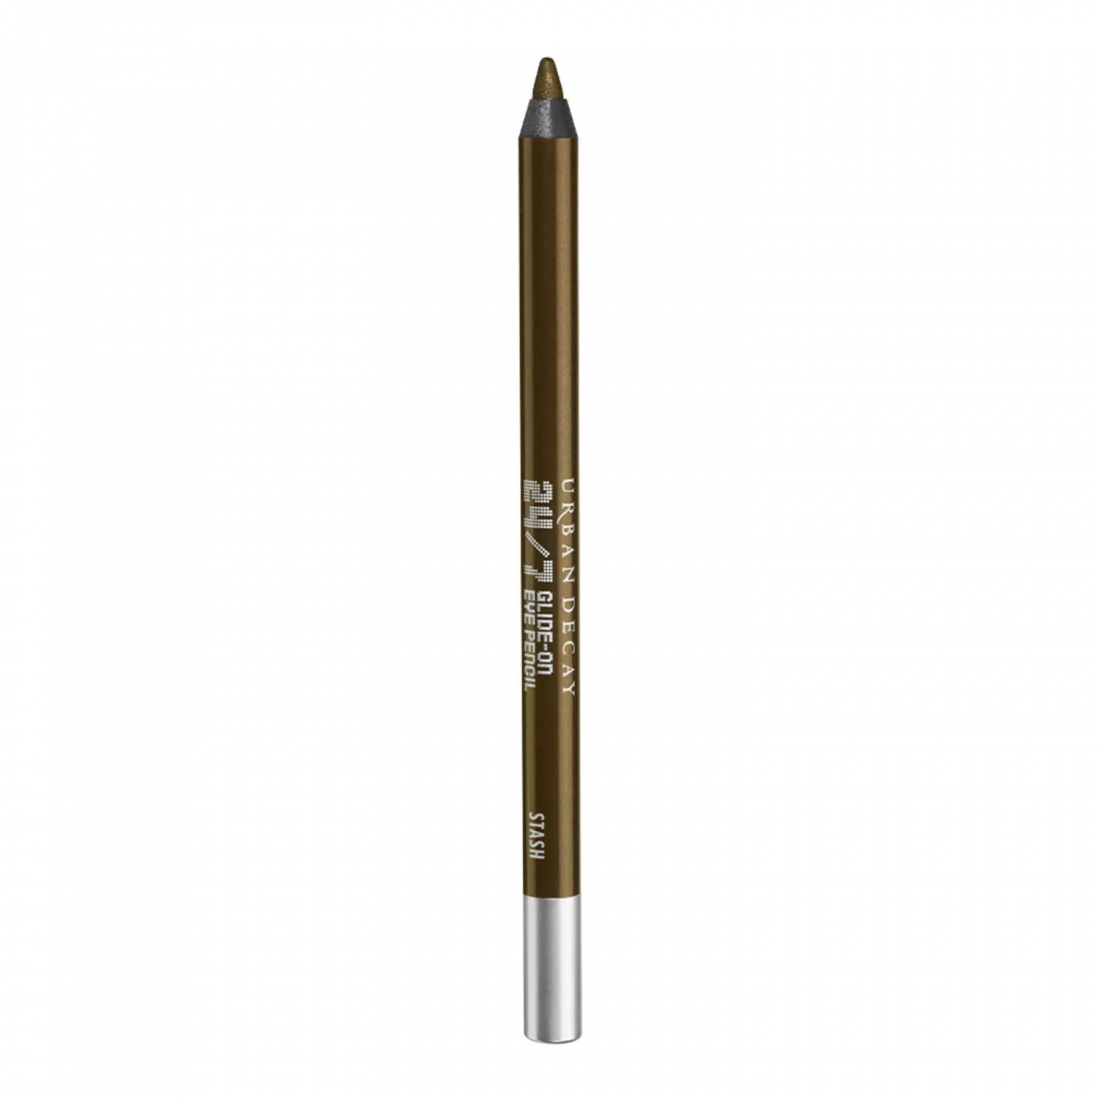 '24/7 Glide On' Waterproof Eyeliner Pencil - Stash 1.2 g